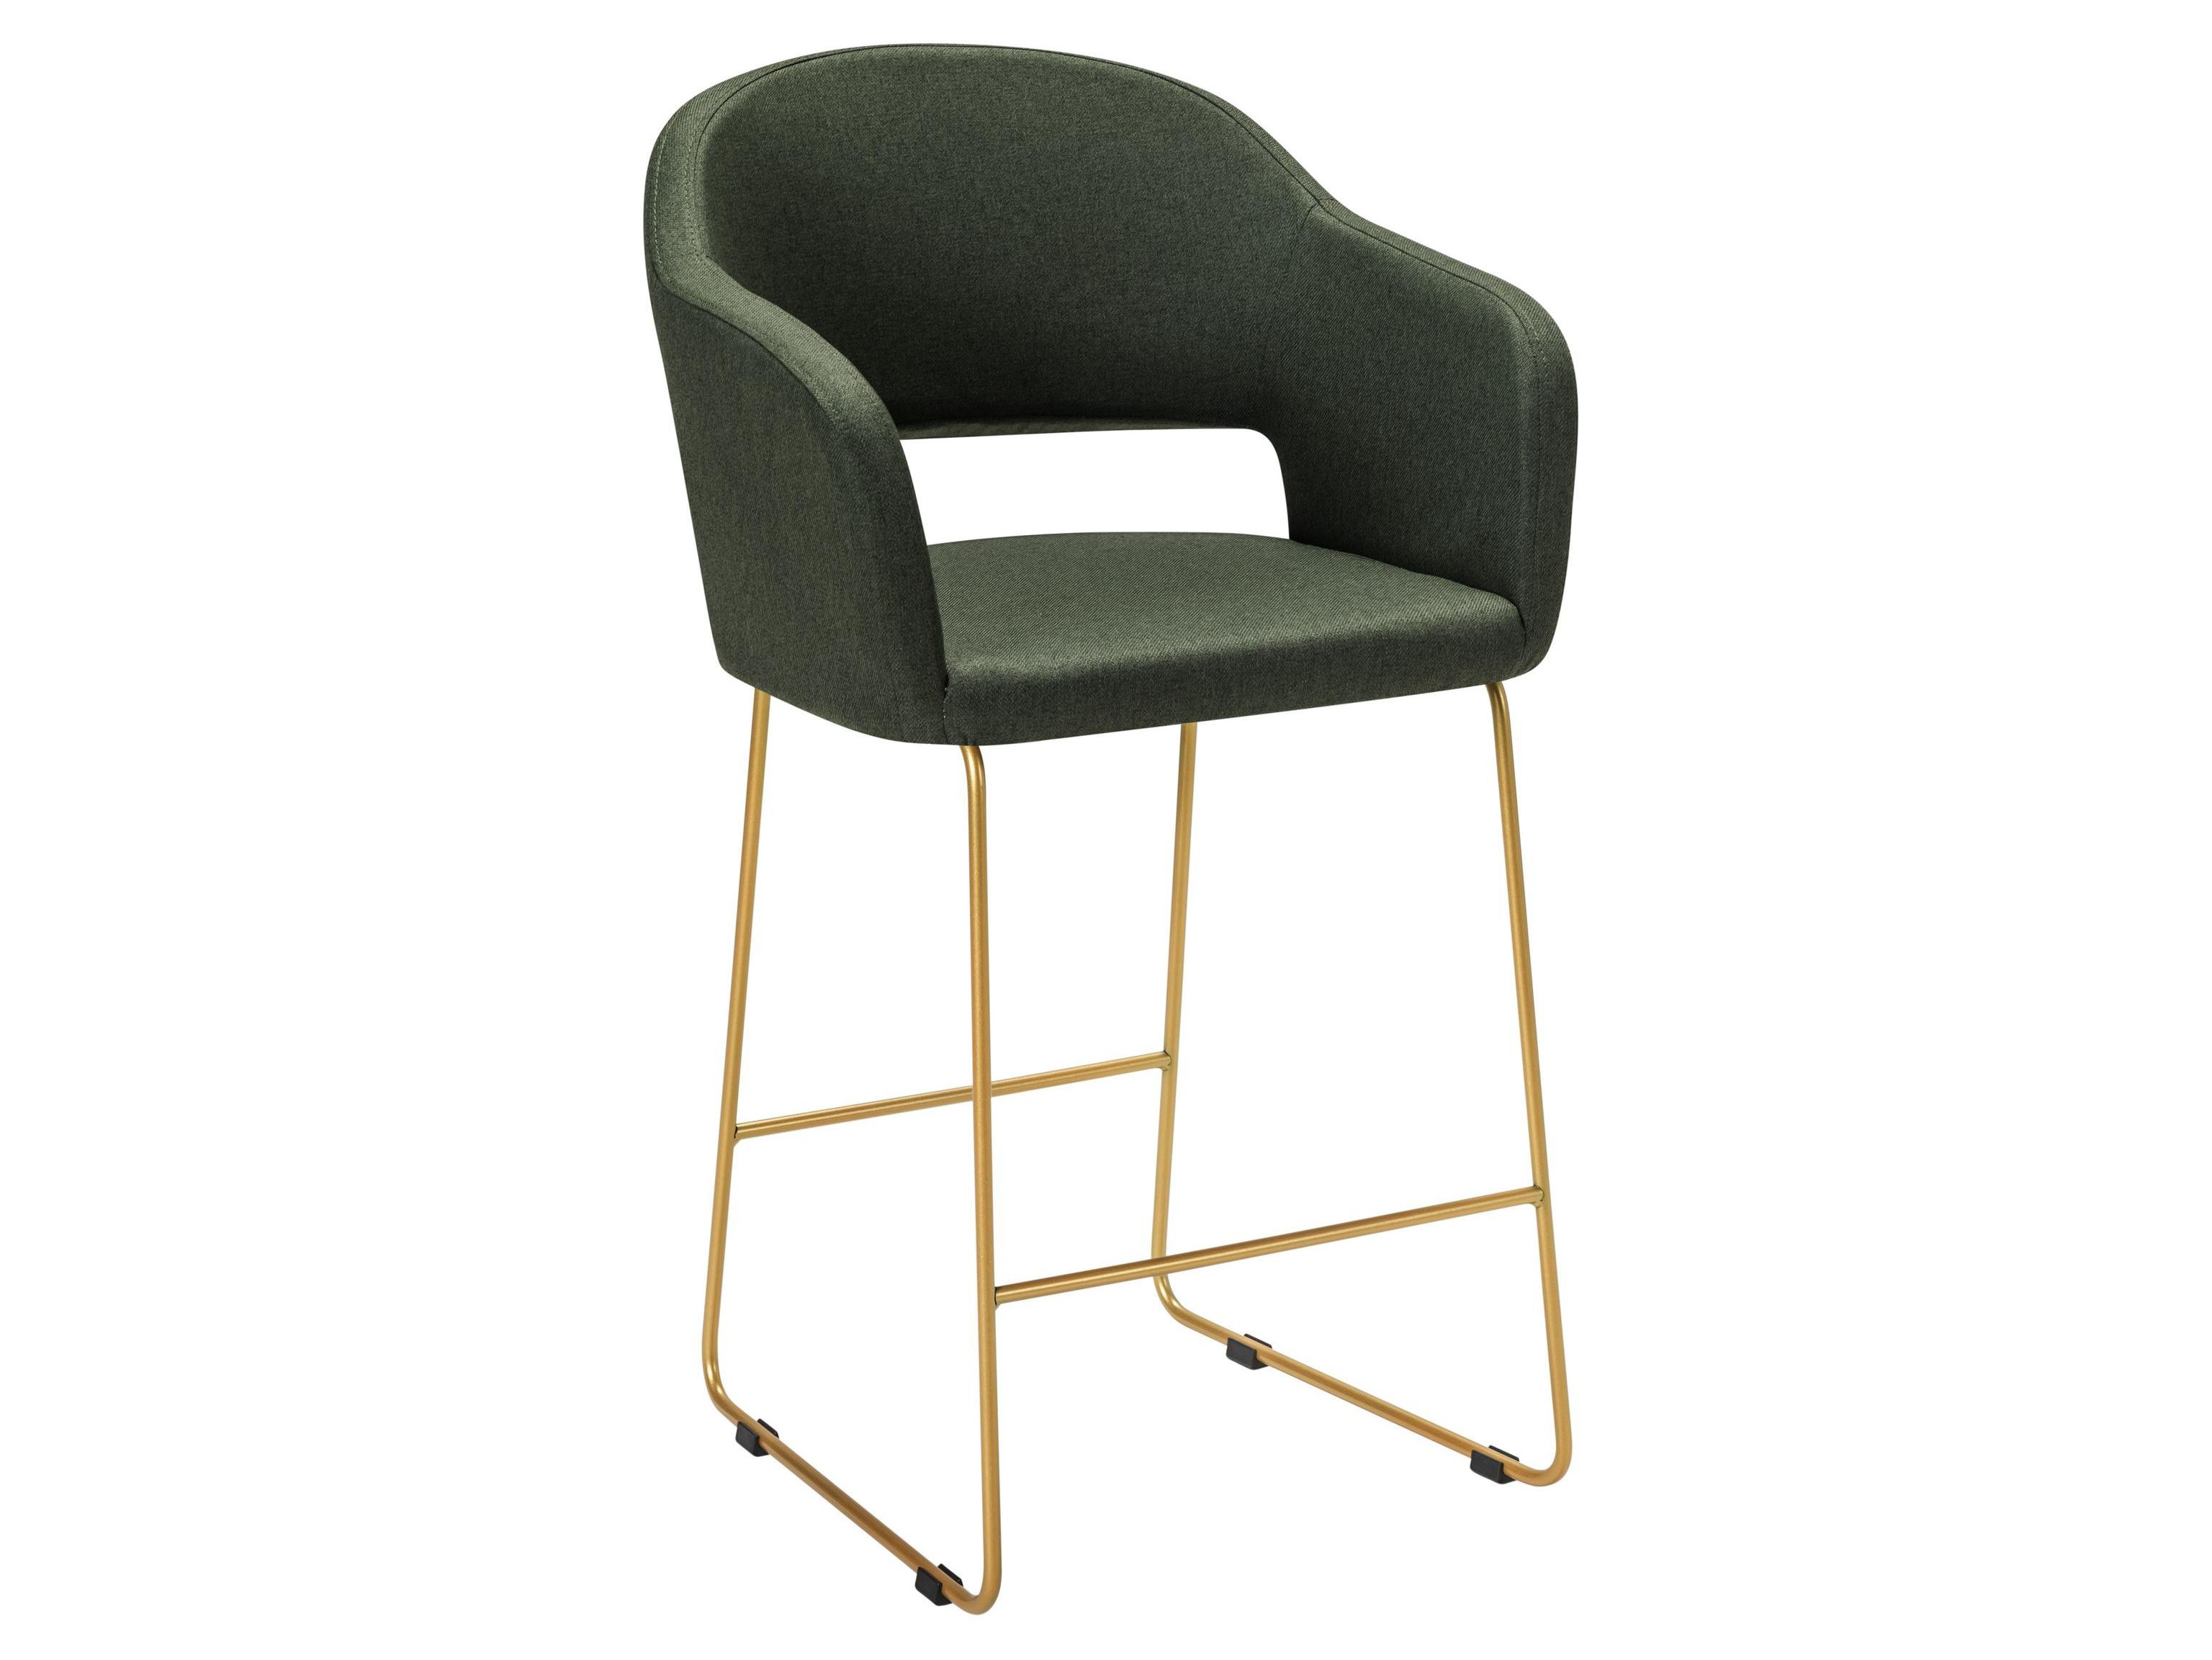 барное кресло oscar зеленый Кресло полубар Oscar тёмно-зеленый/Линк золото Зеленый, Металл